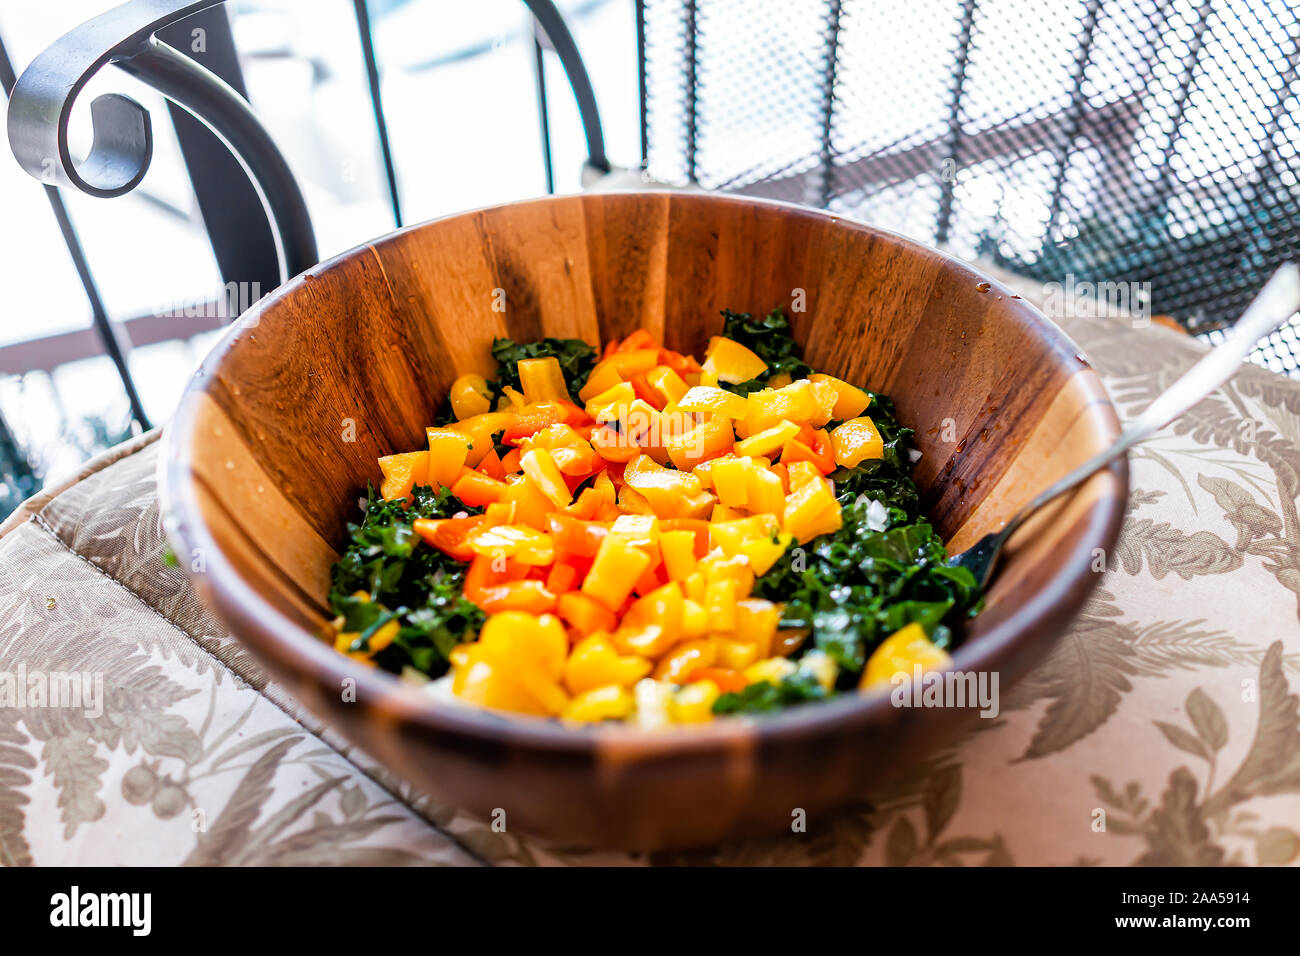 Nahaufnahme eines großen hölzernen Salatschüssel mit gehackten Grünkohl und  orange-gelbe Paprika als vegan Mittag- oder Abendessen auf dem Balkon Stuhl  Stockfotografie - Alamy